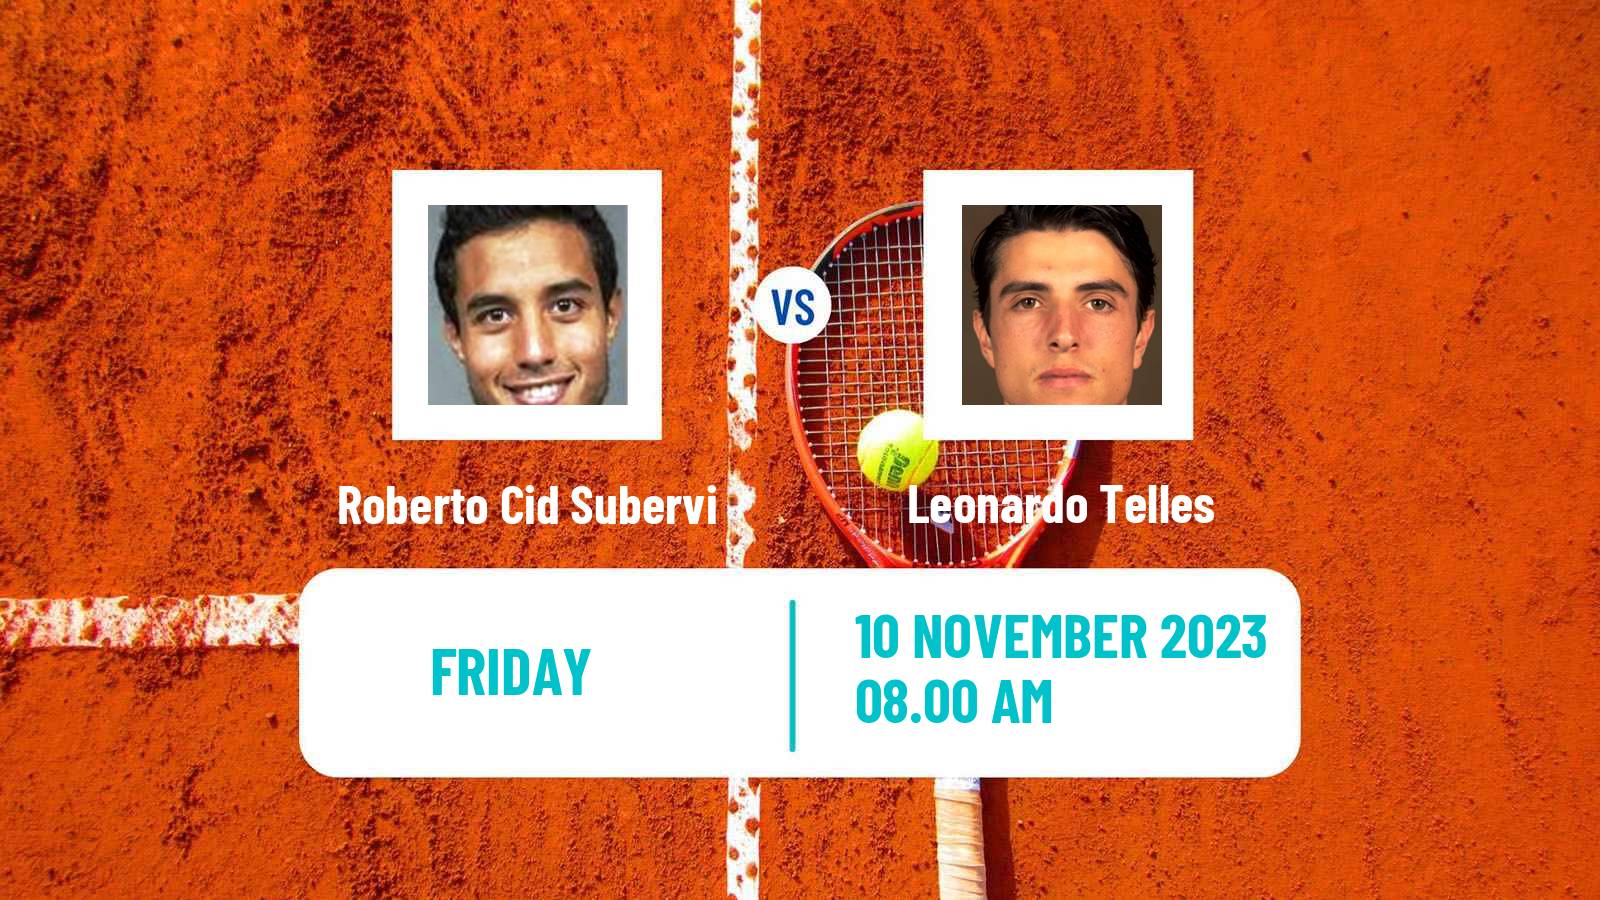 Tennis ITF M15 Santo Domingo 2 Men Roberto Cid Subervi - Leonardo Telles